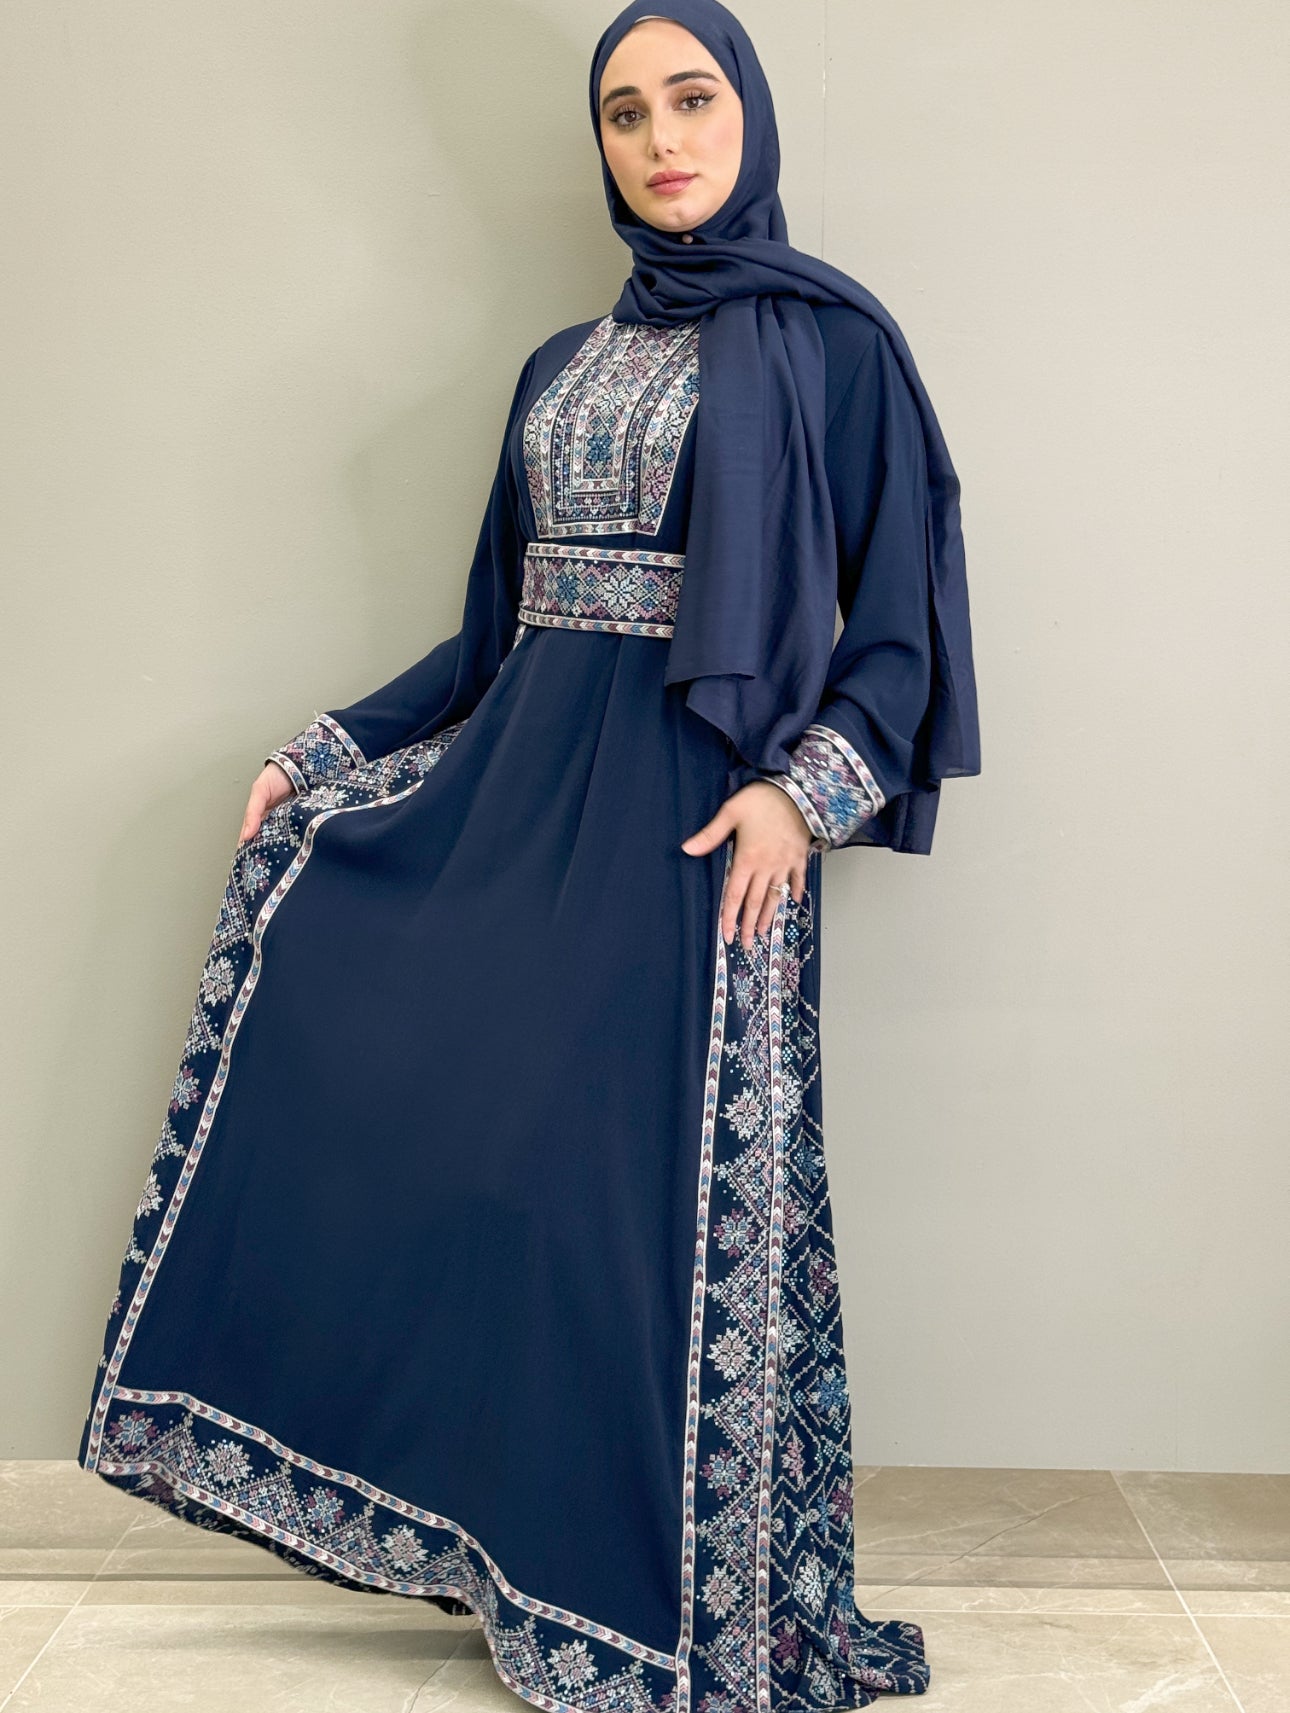 Falahi Princess Dress - NAVY